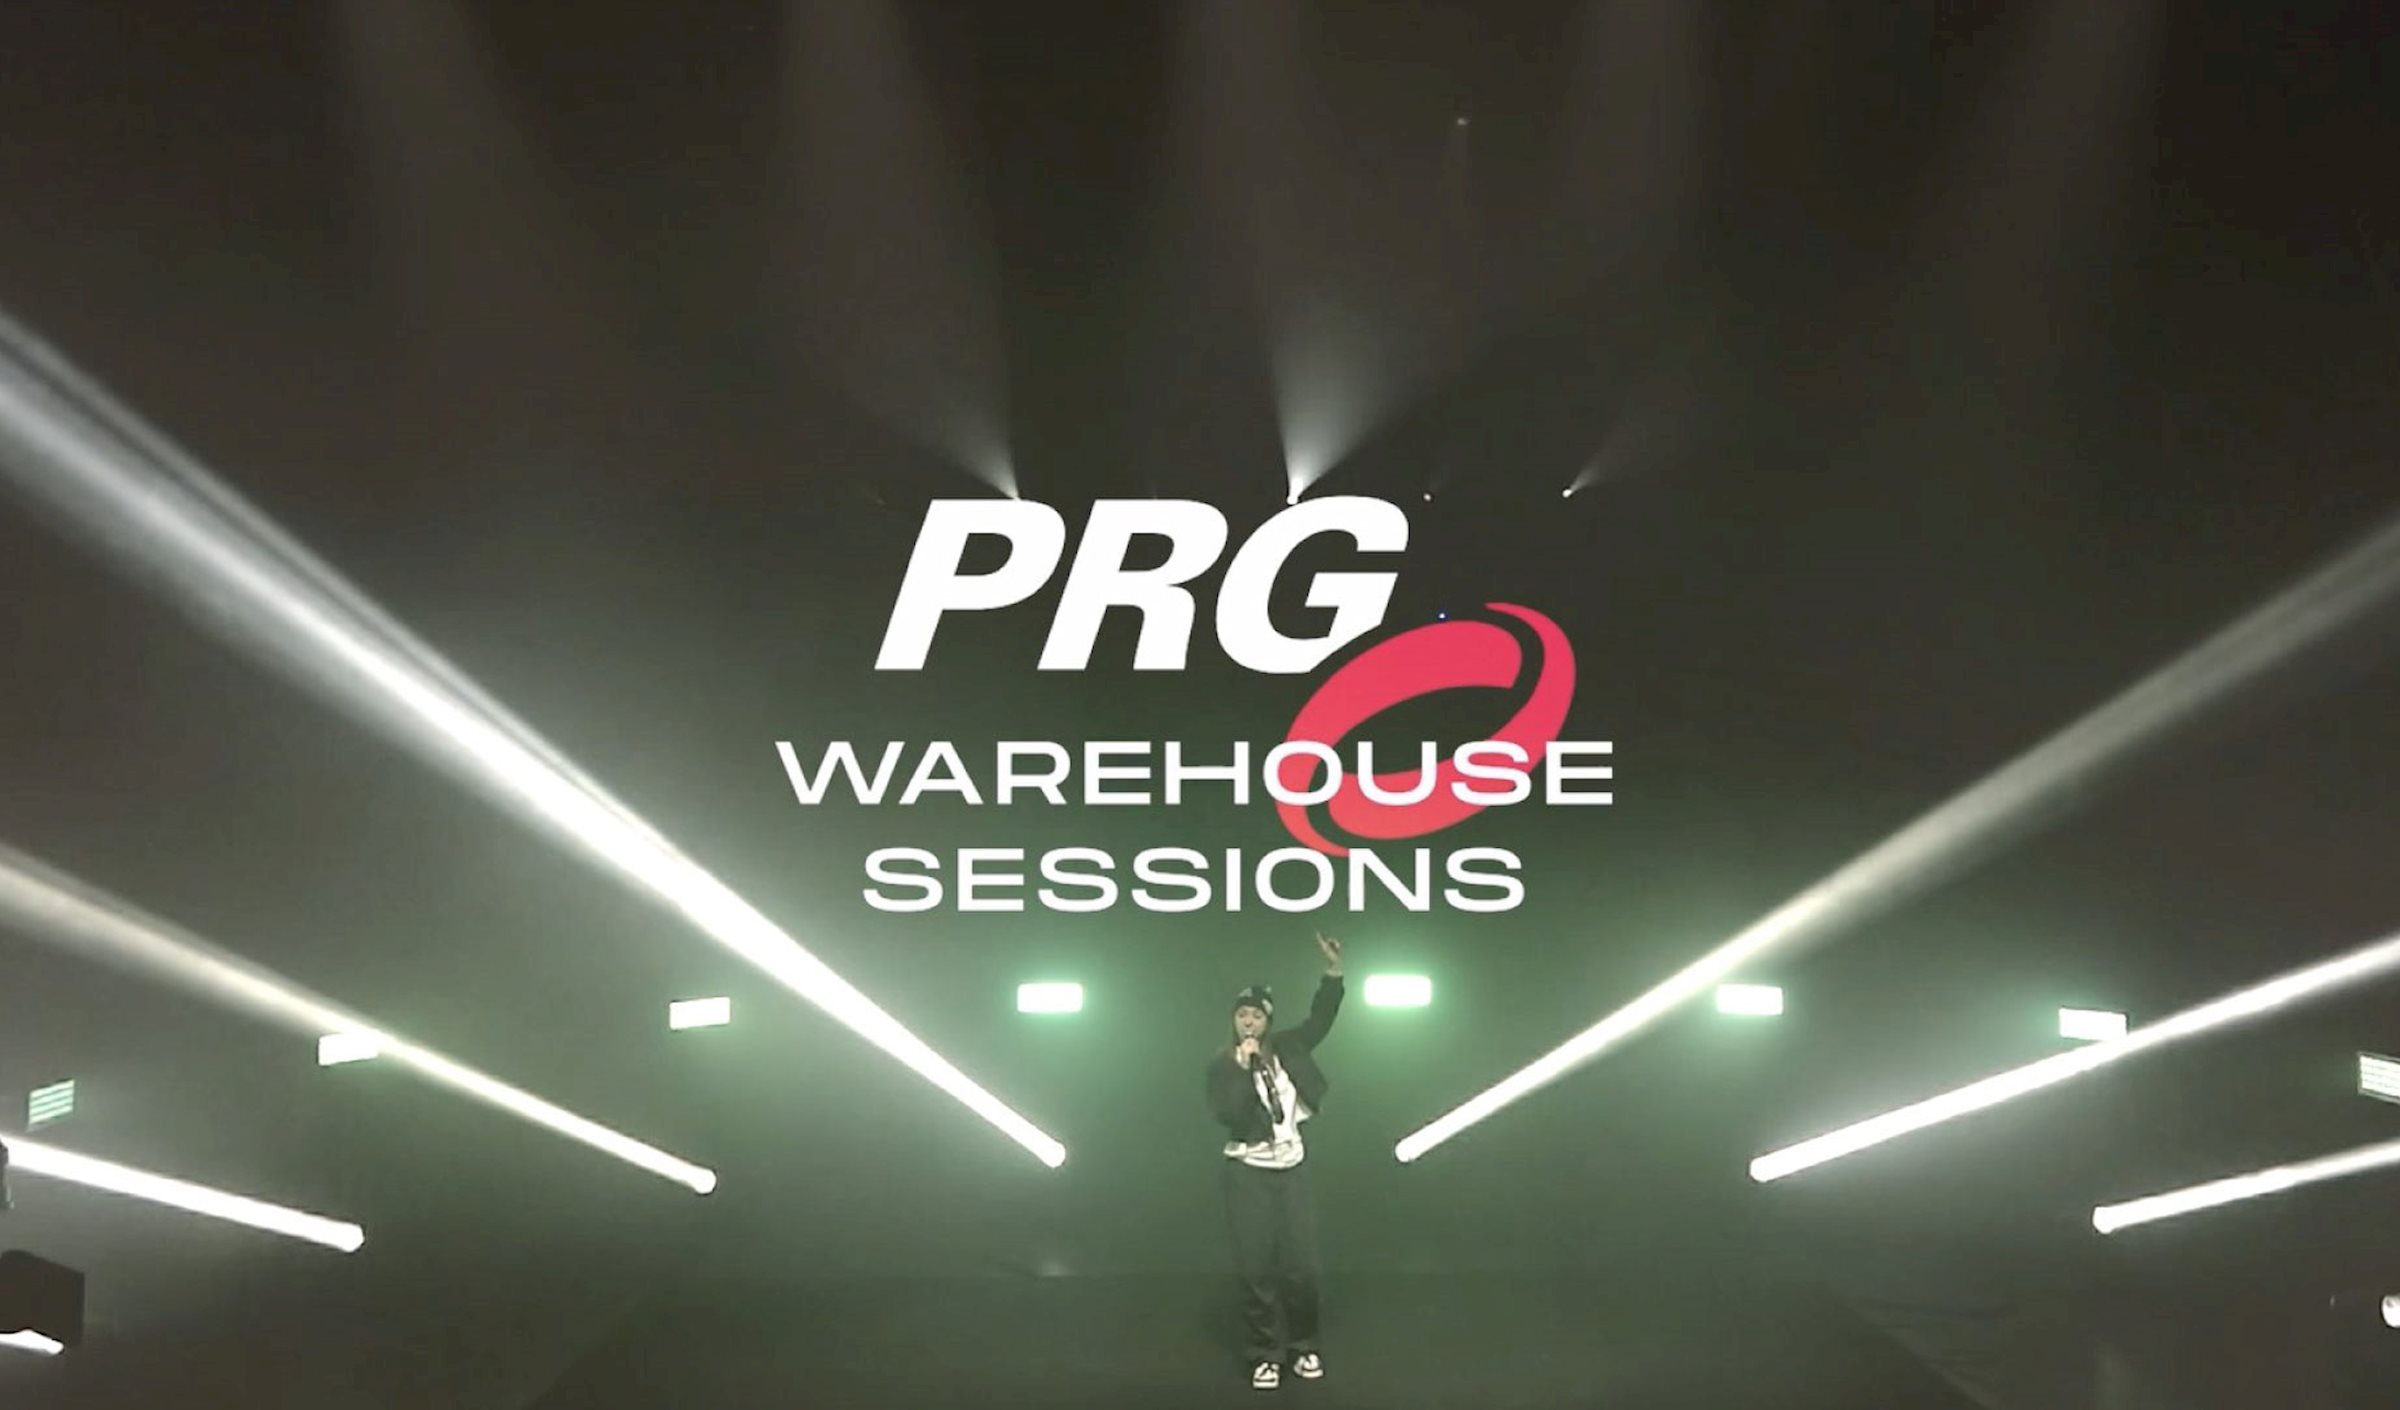 Die PRG Warehouse Sessions gehen in die zweite Runde - Unser belgisches PRG-Team lädt aufstrebende Künstler auf die PRG Warehouse Stage ein.